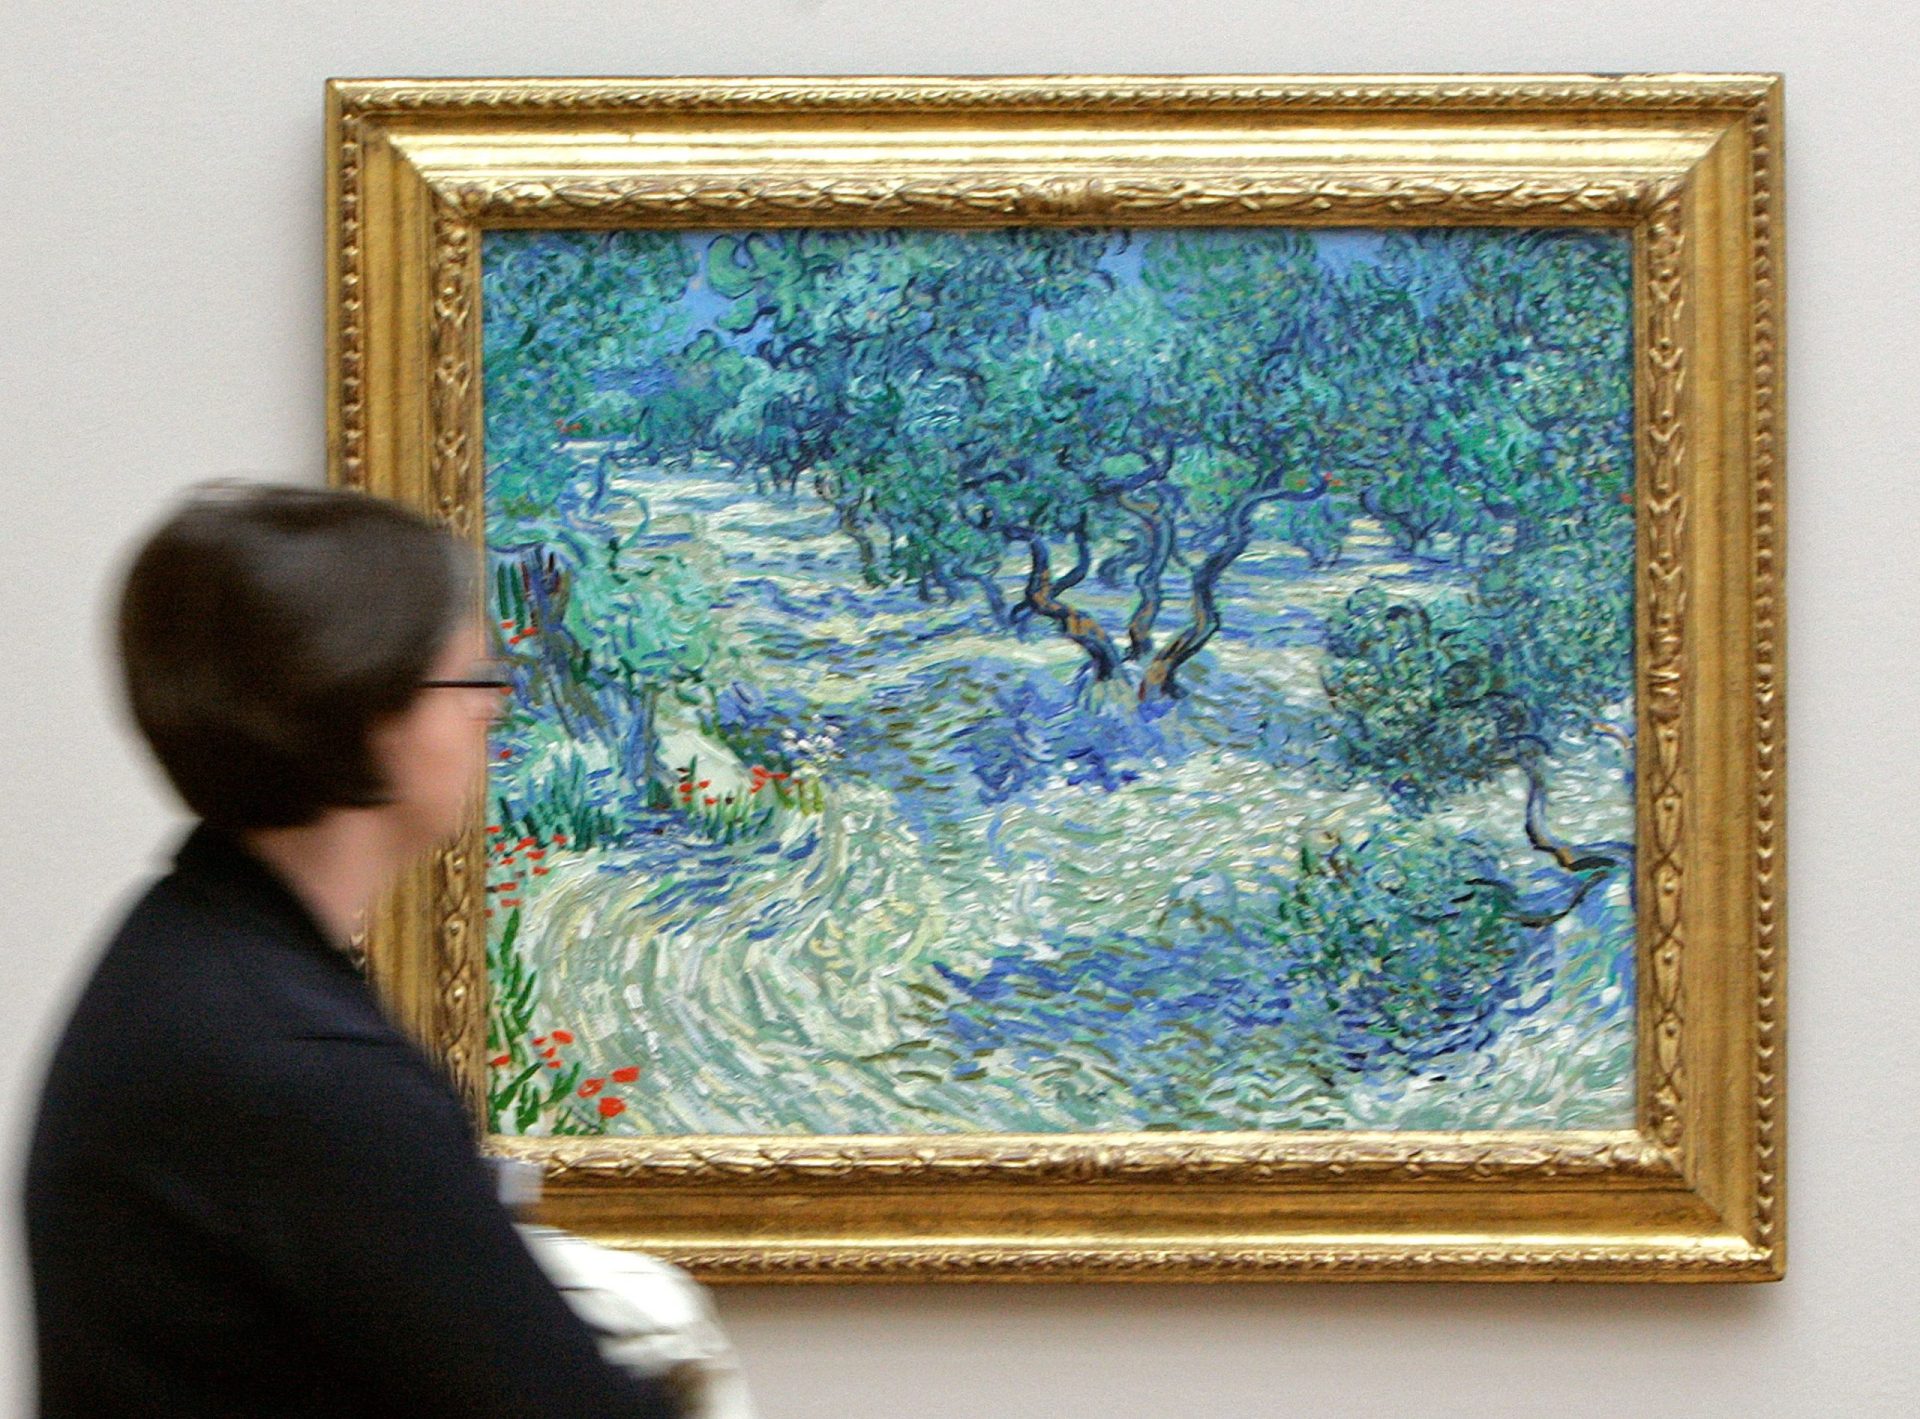 Especialistas descobrem ‘segredo’ escondido em quadro de Van Gogh